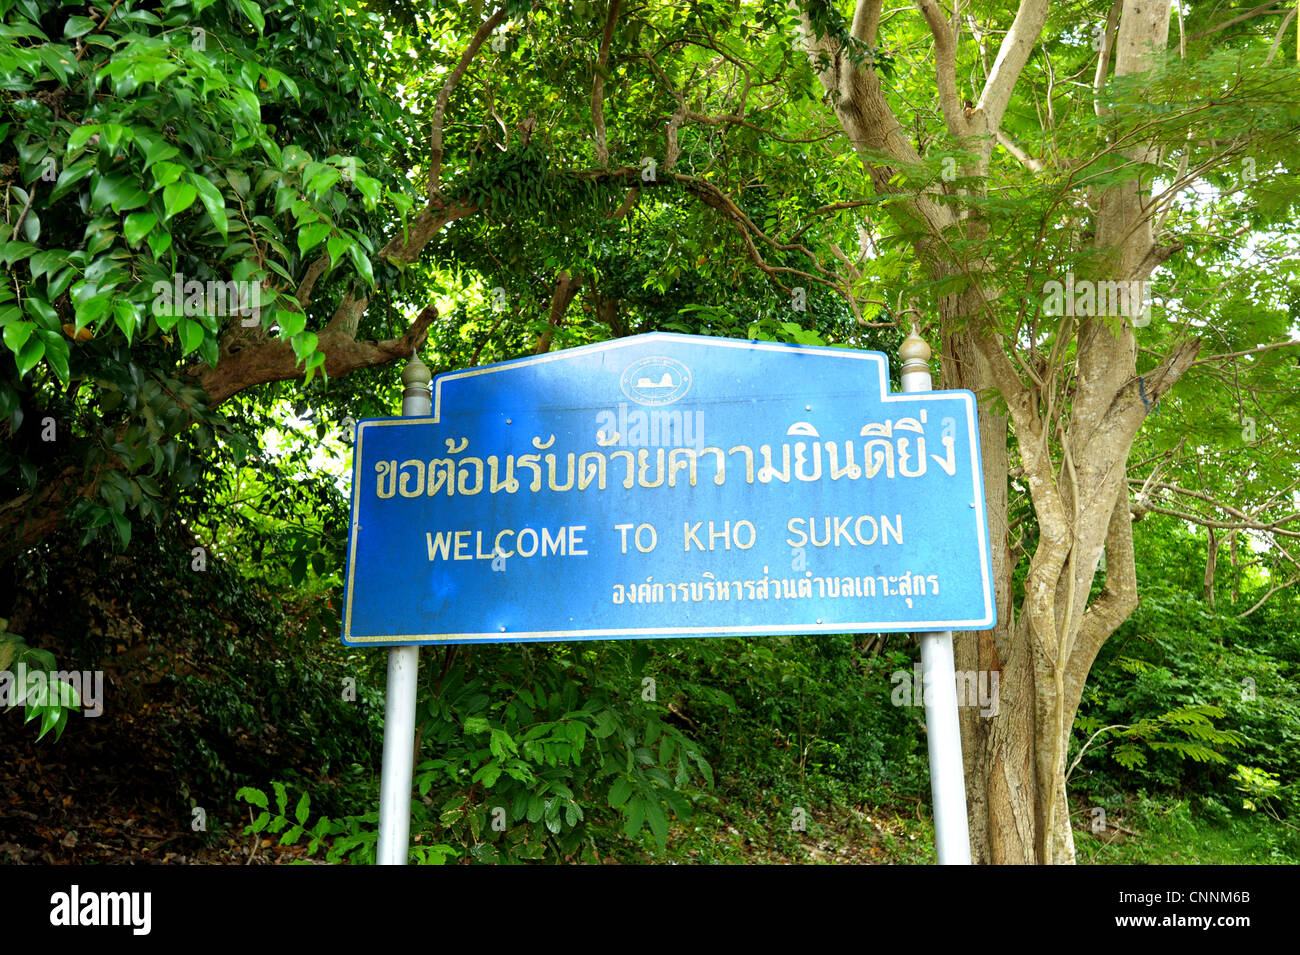 Bienvenue À KOH SUKON, le panneau de bienvenue que vous arrivez à l'île, ko sukon, trang , au sud de la Thaïlande Banque D'Images